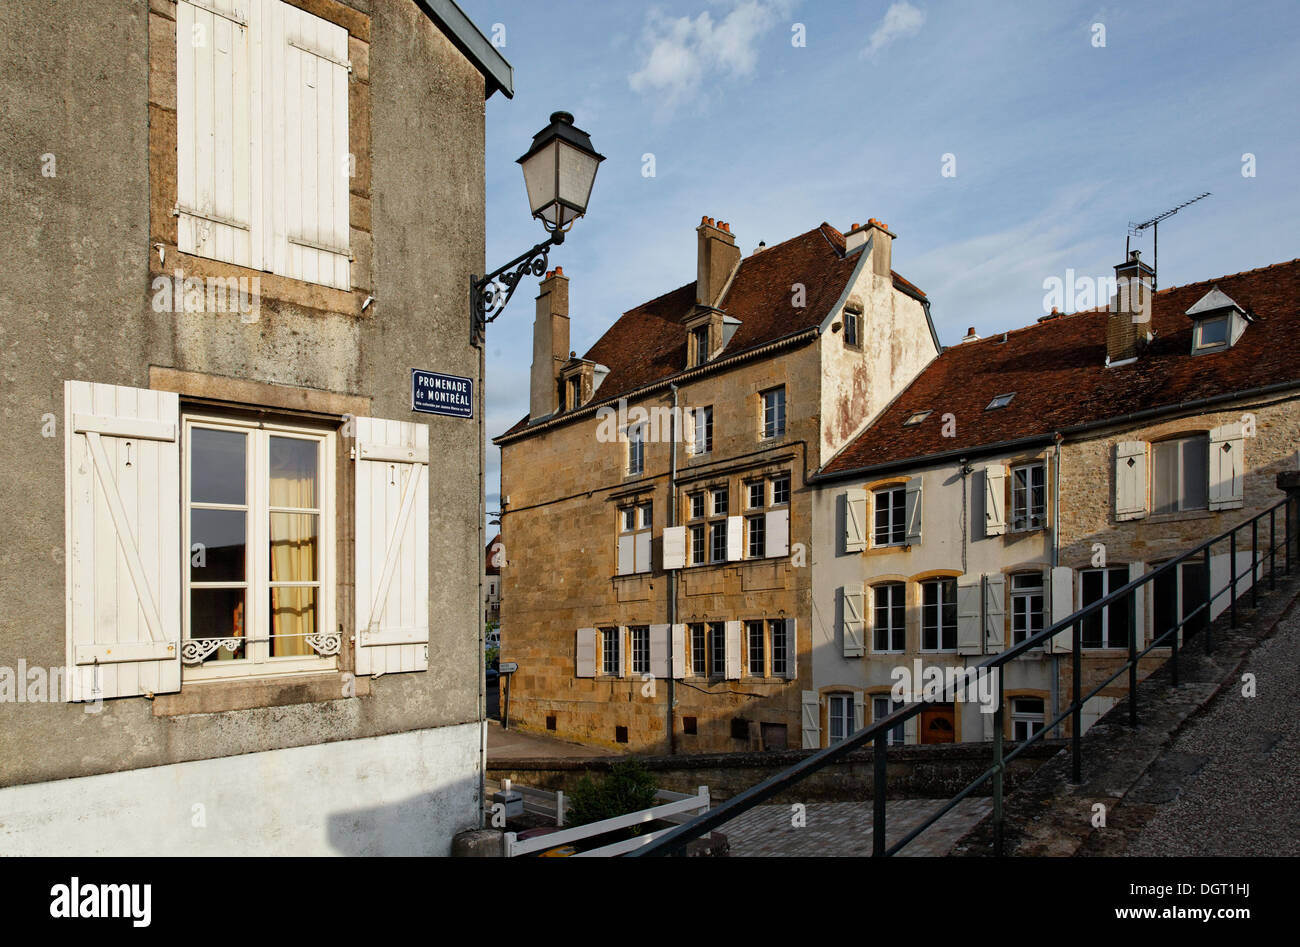 Maisons sur le mur de la ville, Langres, Via Francigena, département de la Haute-Marne, région Champagne-Ardenne, France, Europe Banque D'Images